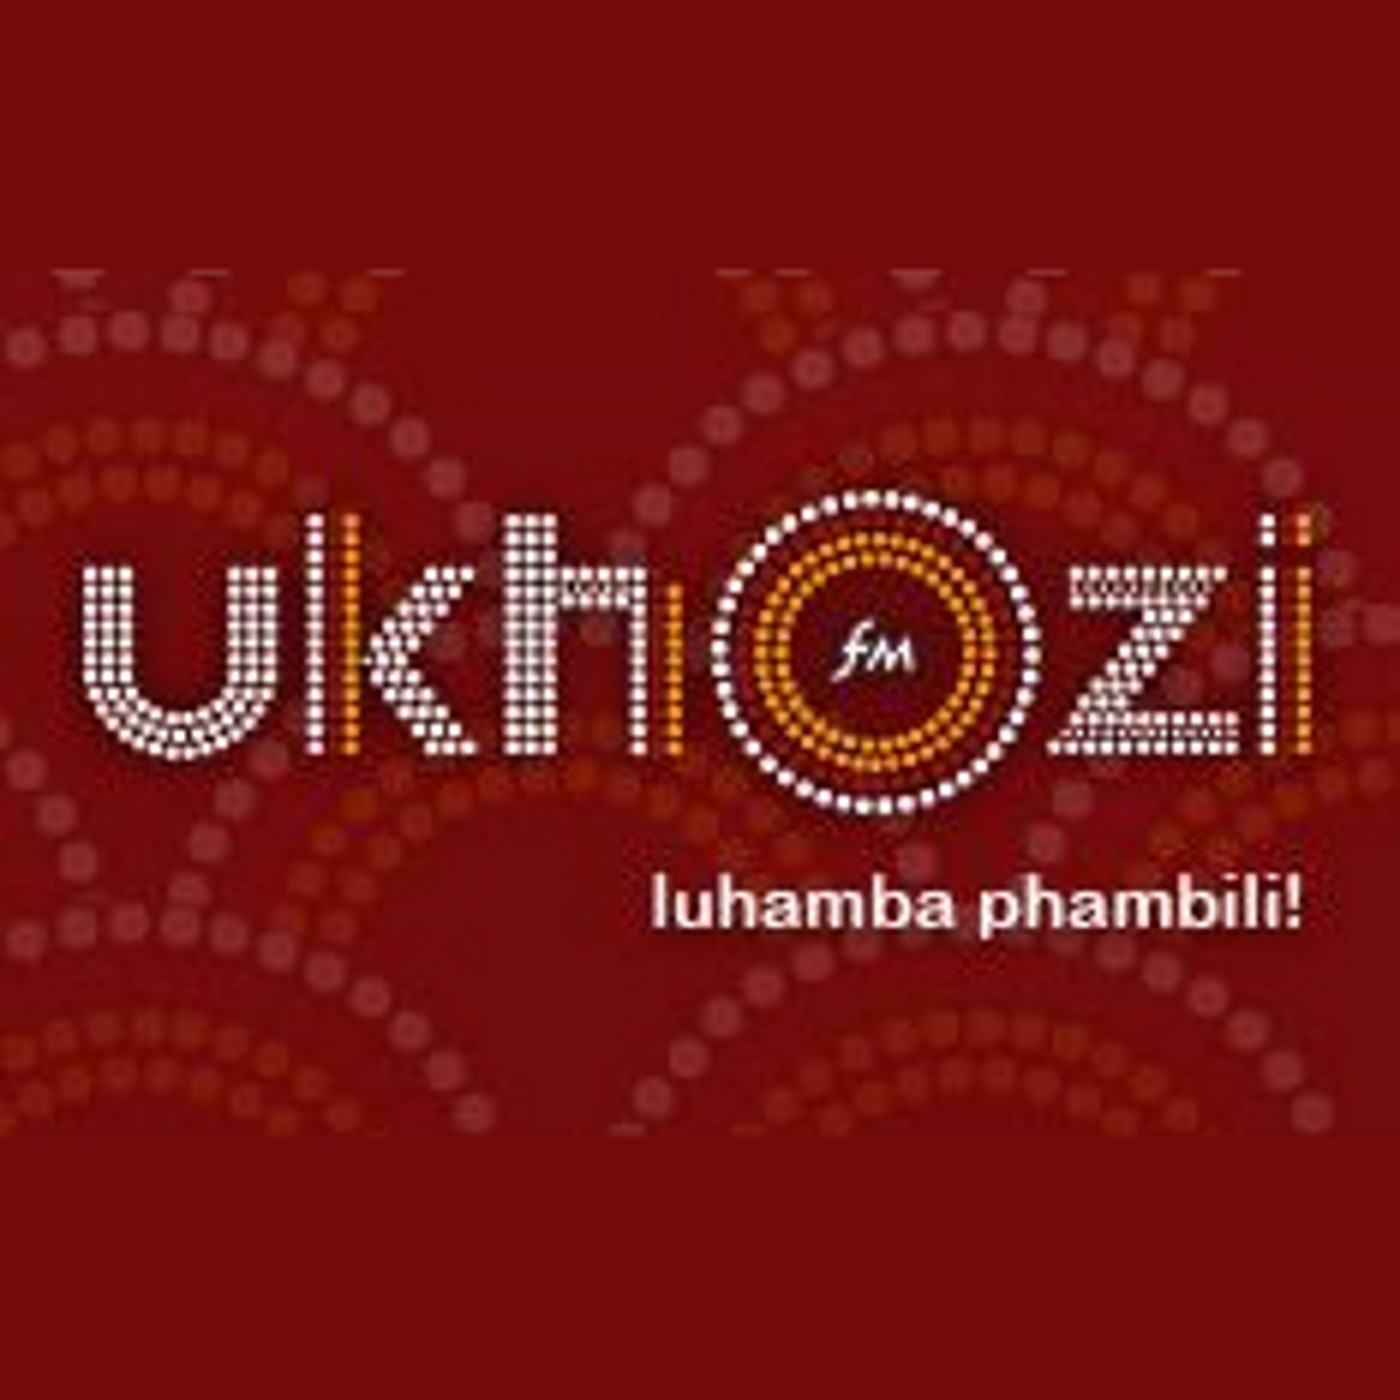 Sikhuluma nomhlaziyi wezepolitiki u Khaya Sithole nge January 8 statement